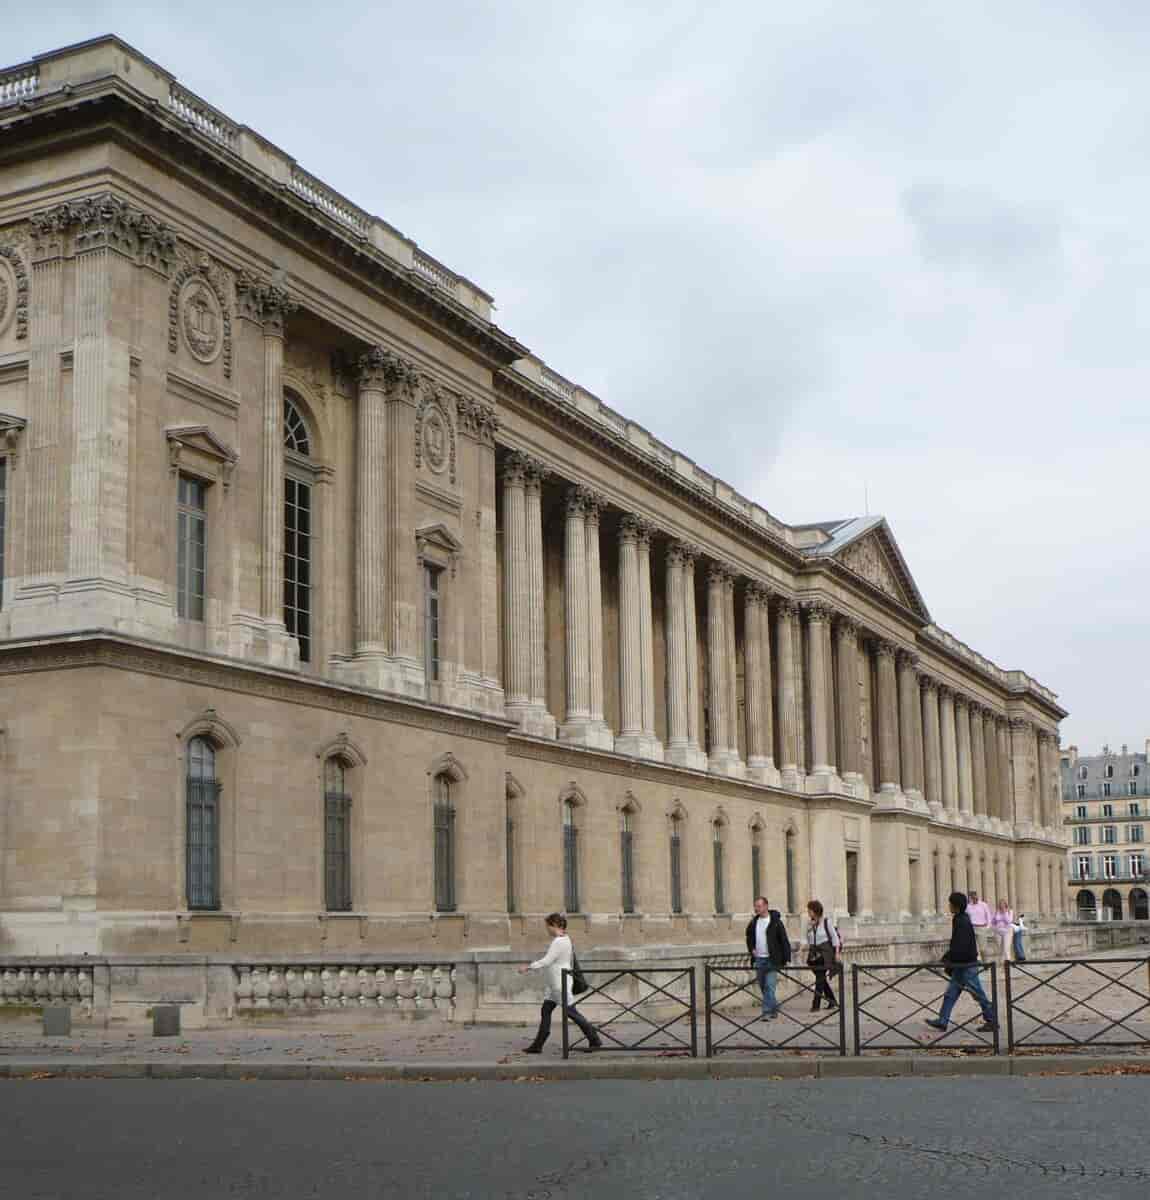 Paris. Louvres østfacade, opført 1667-1674 af Claude Perrault. Værket blev ikonisk for den franske barokklassicisme. 